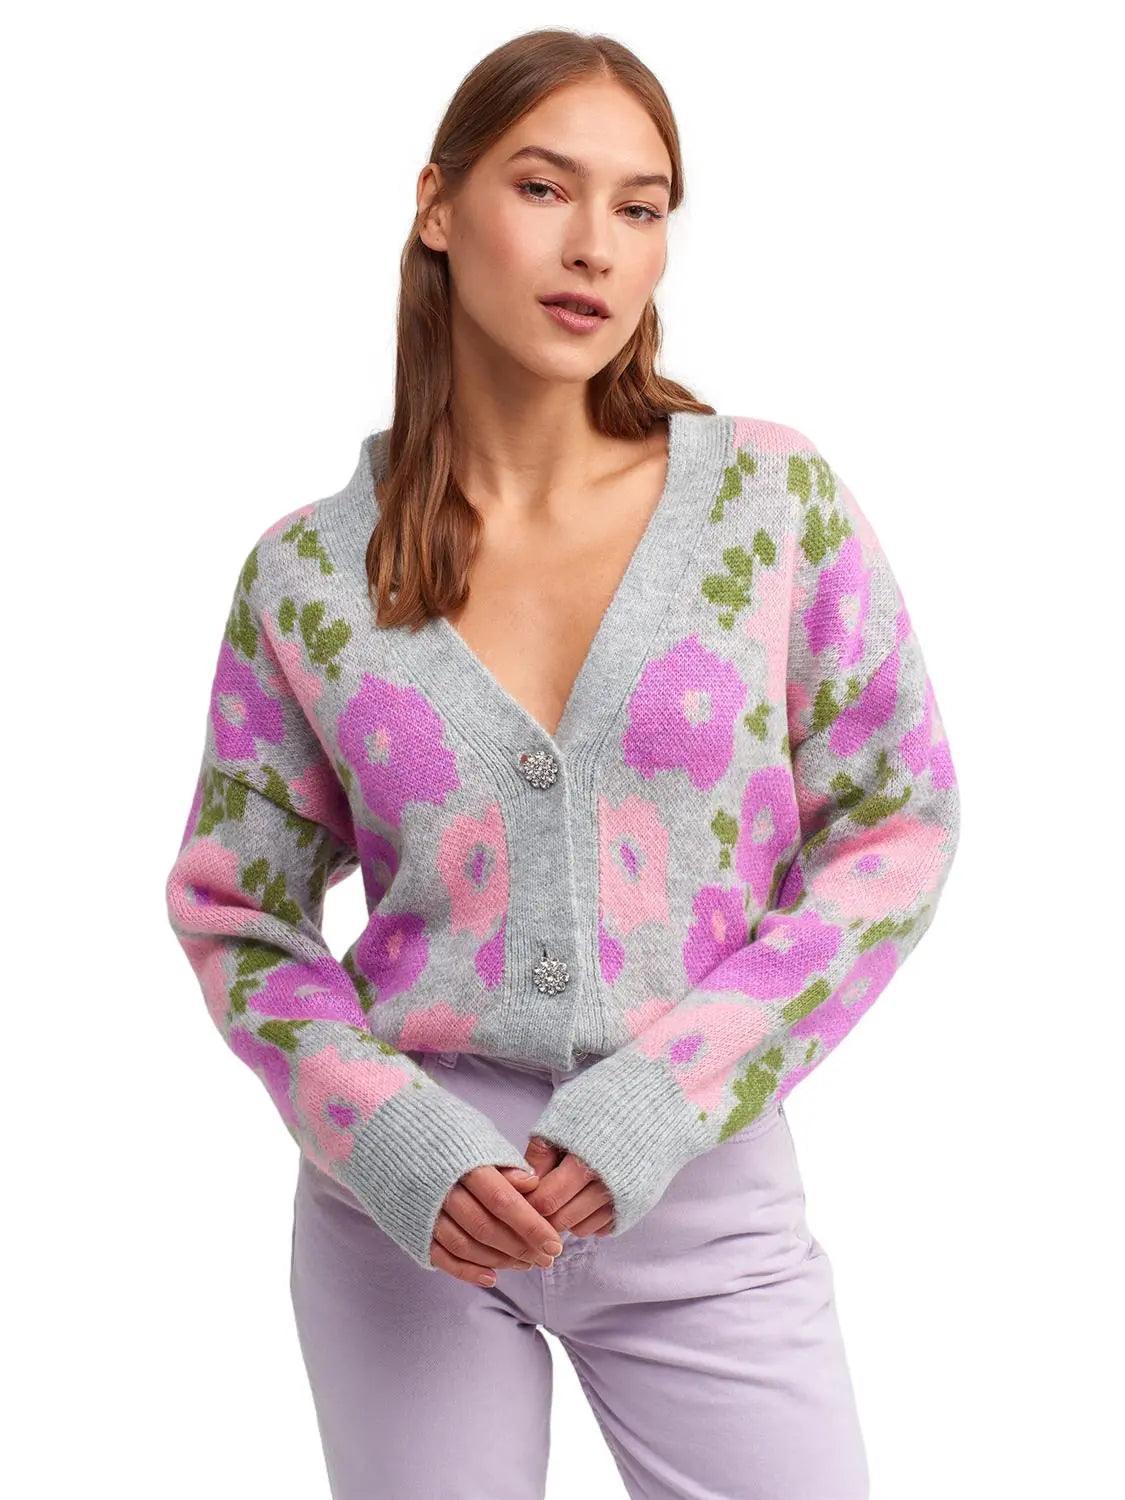 V-Neck Floral Patterned Sweater Cardigan Grey / One Size ZEFASH